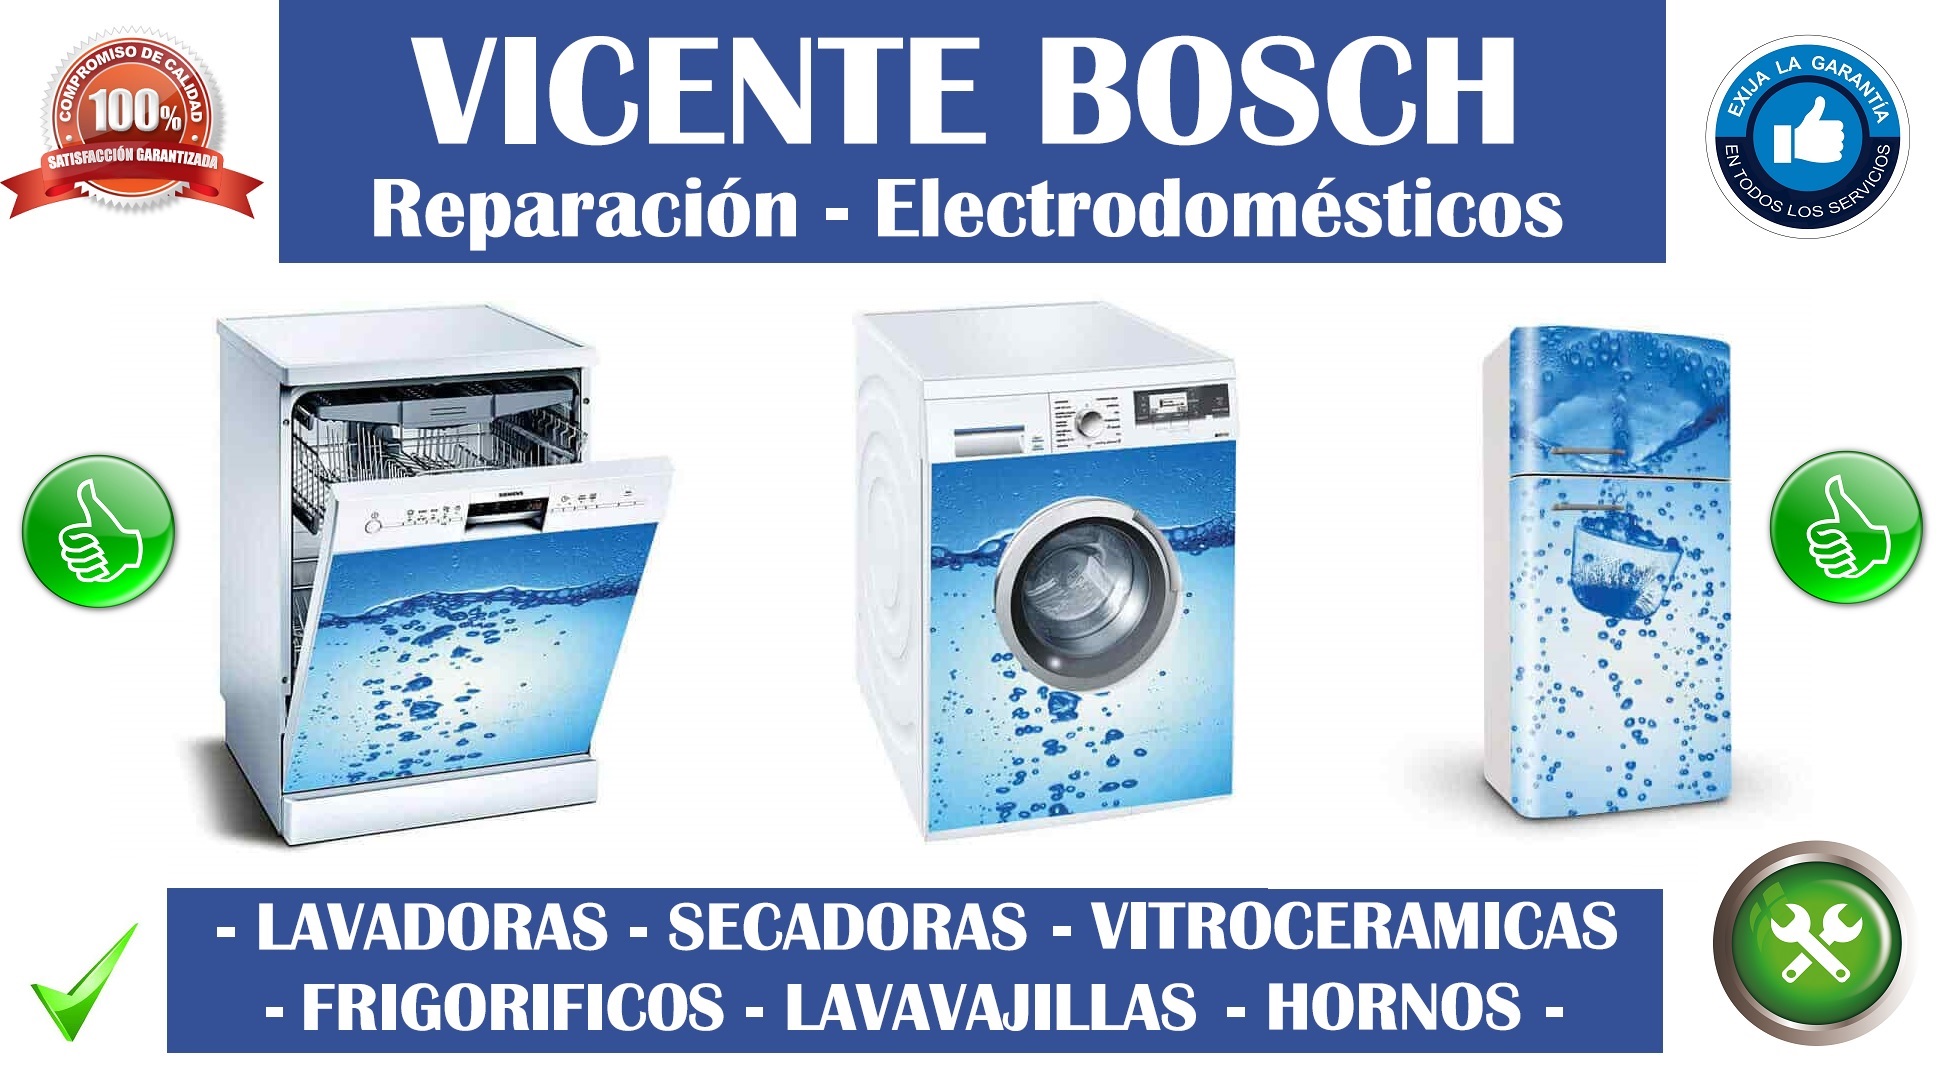 Foto de Vicente Bosch reparación y venta de electrodomésticos